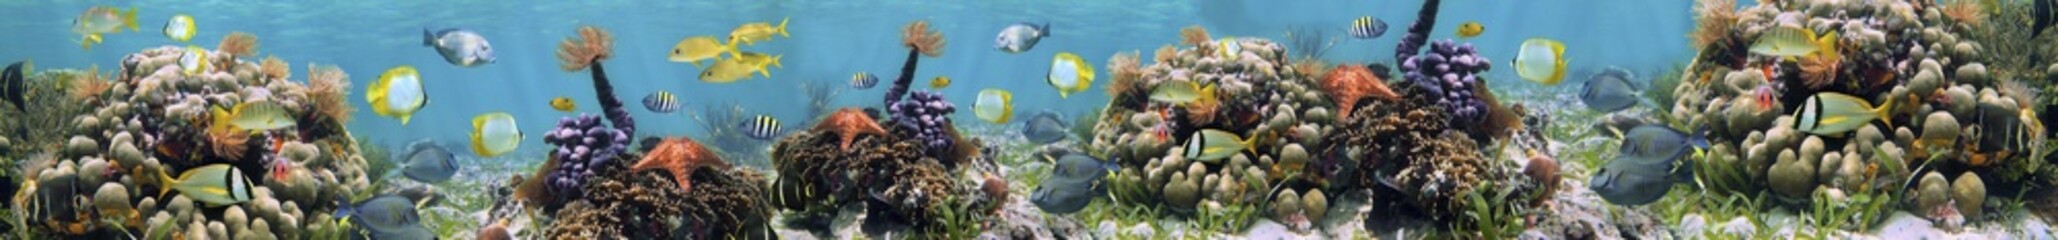 fish in an aquarium, panorama of water